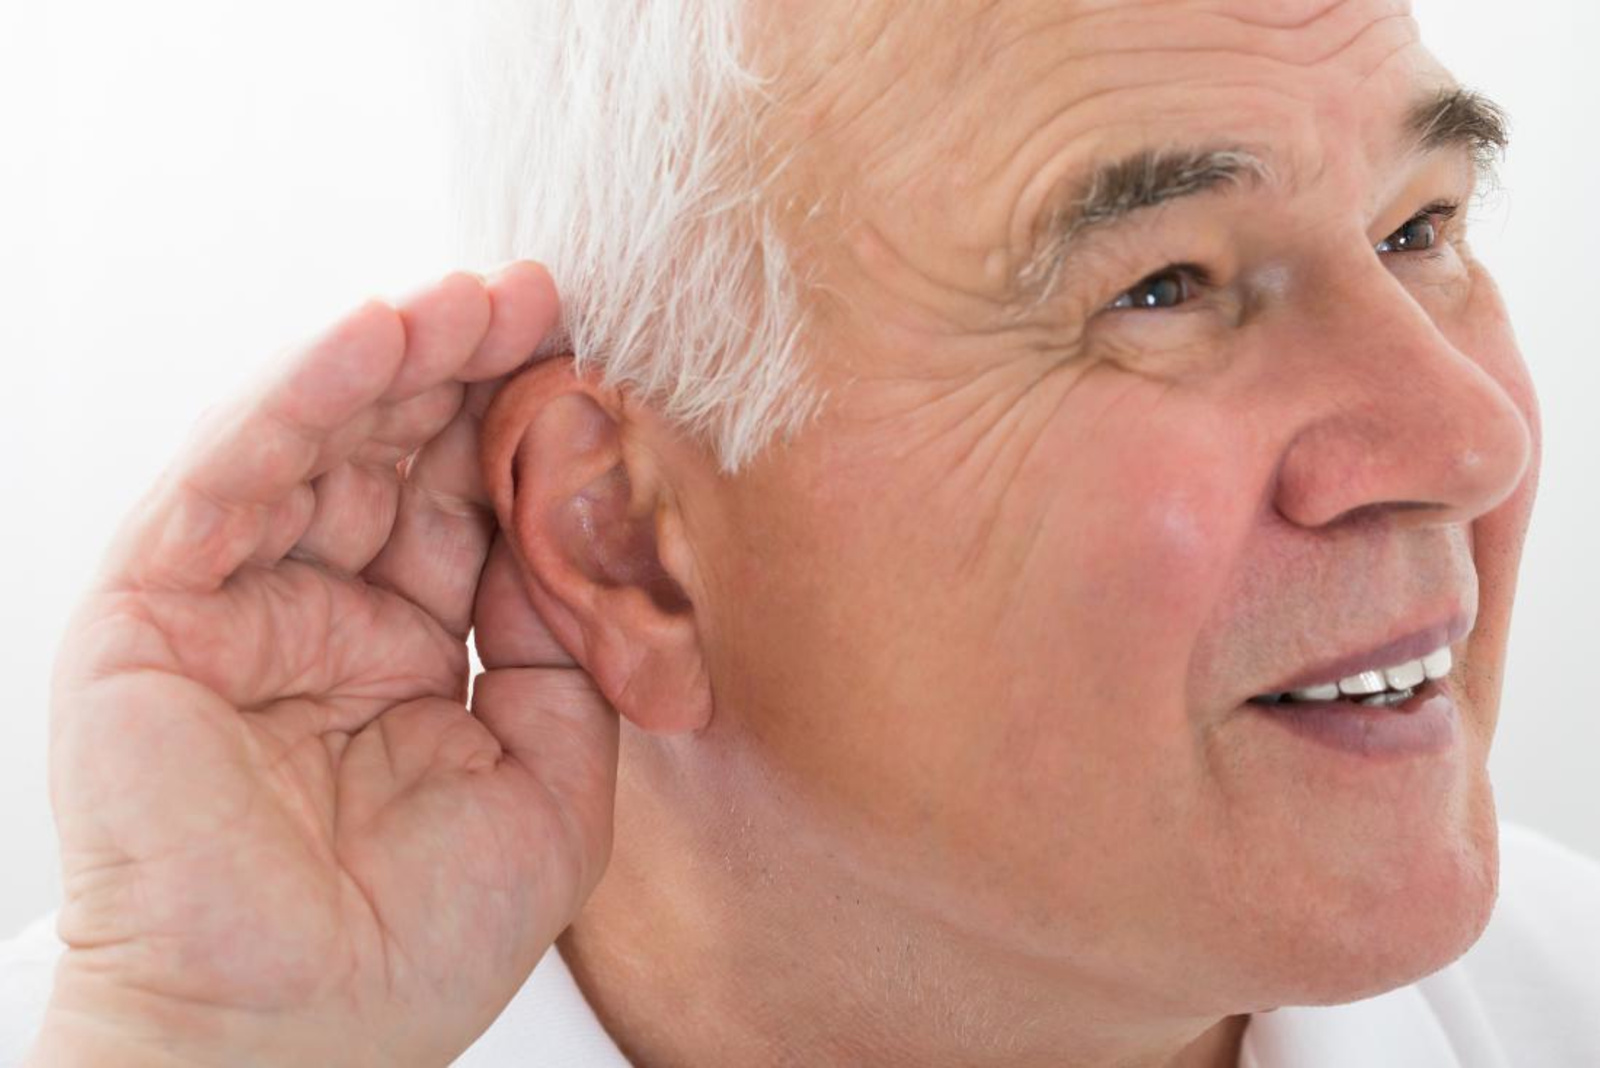 Μονόπλευρη βαρηκοΐα - Οξεία πτώση ακοής στο ένα αυτι - Δεν ακούω καλά απο το ένα αυτί